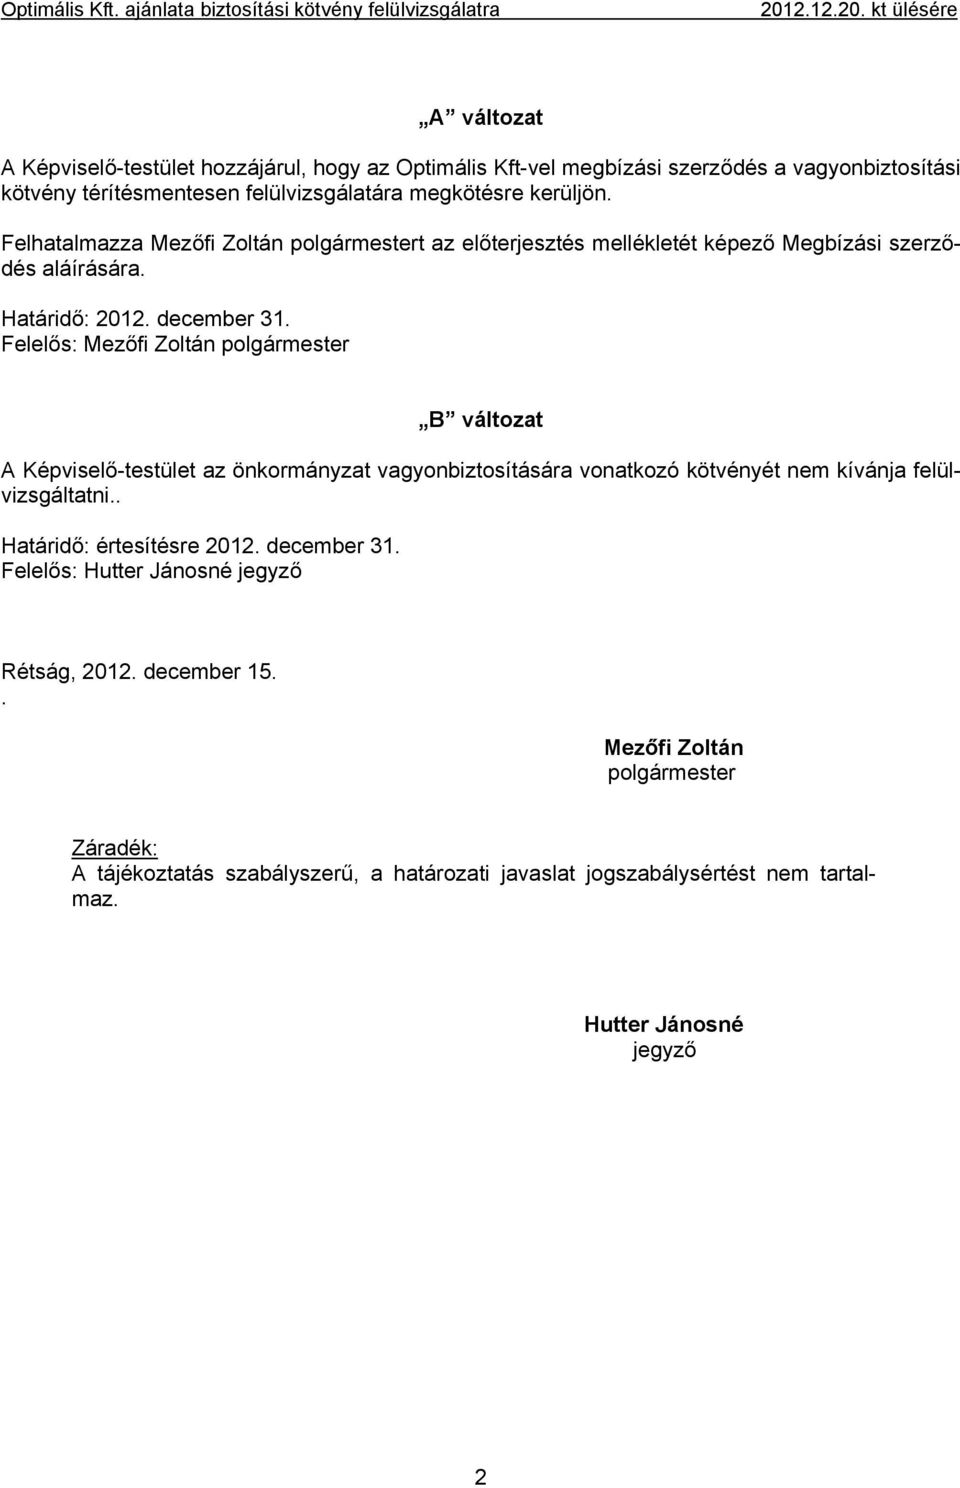 Felhatalmazza Mezőfi Zoltán polgármestert az előterjesztés mellékletét képező Megbízási szerződés aláírására. Határidő: 2012. december 31.